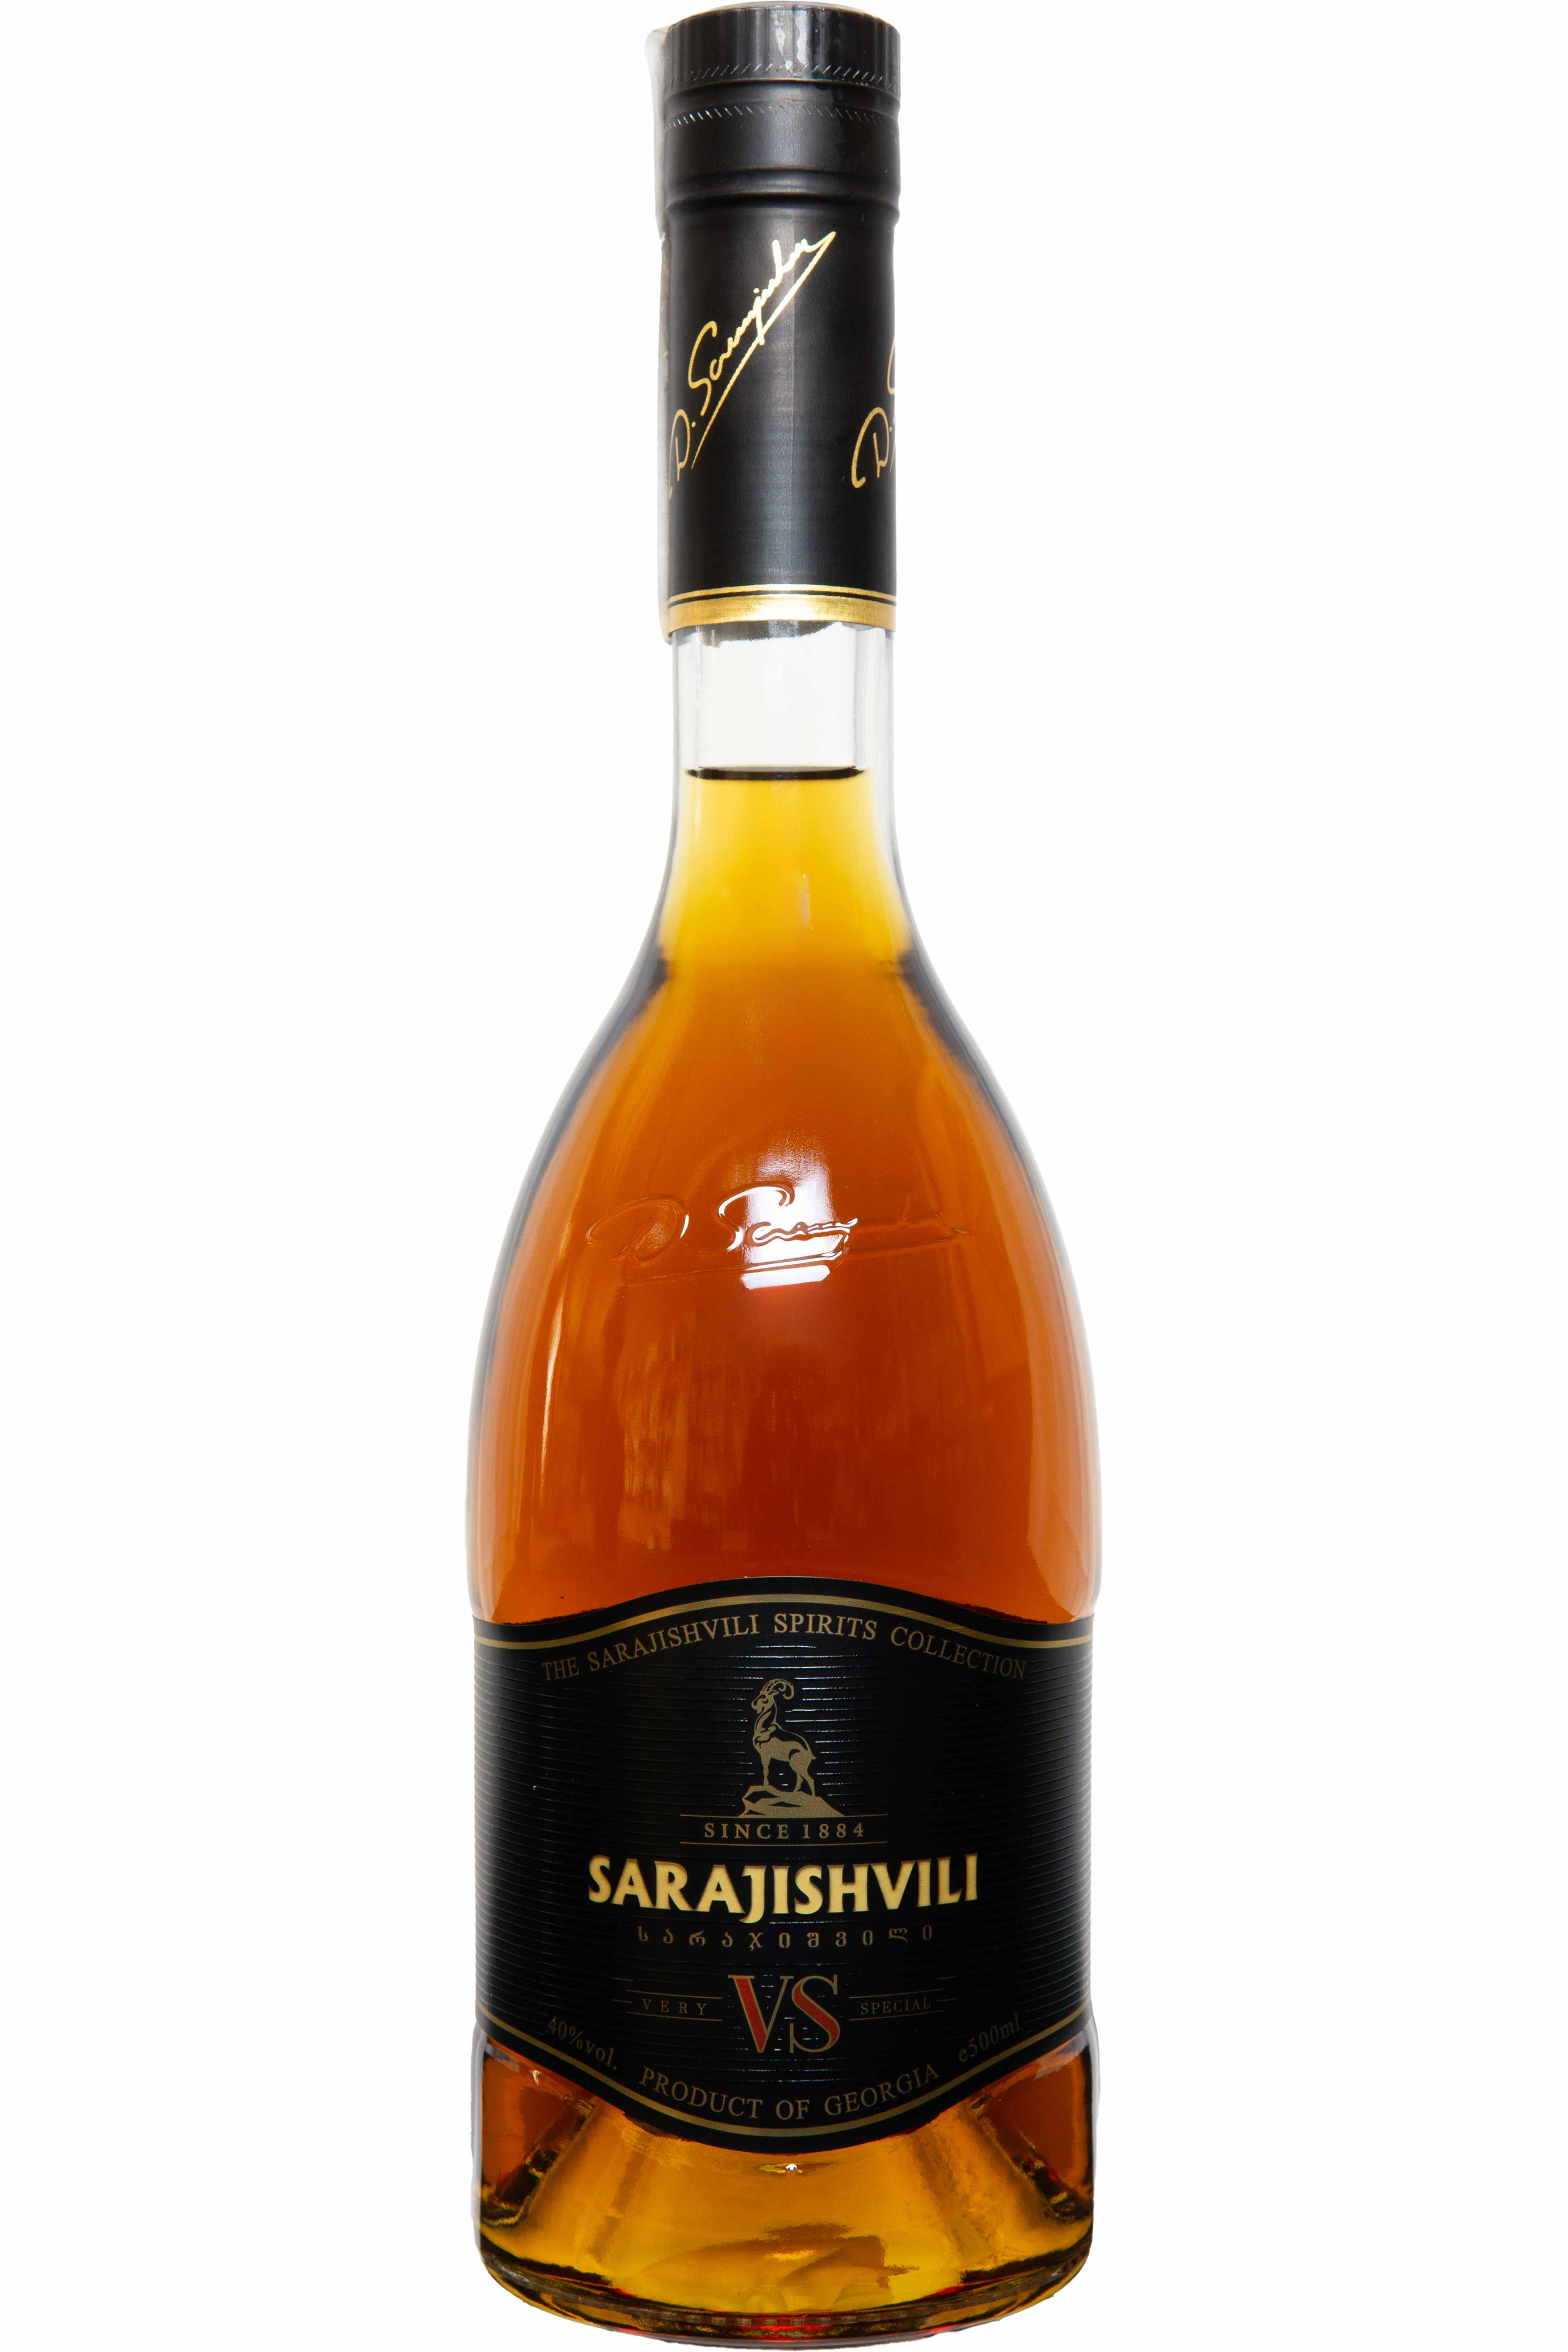 Sarajishvili VS 50cl, reifer georgischer Brandy, gelagert in Eichenfässern, mit Noten von Vanille und Schokolade